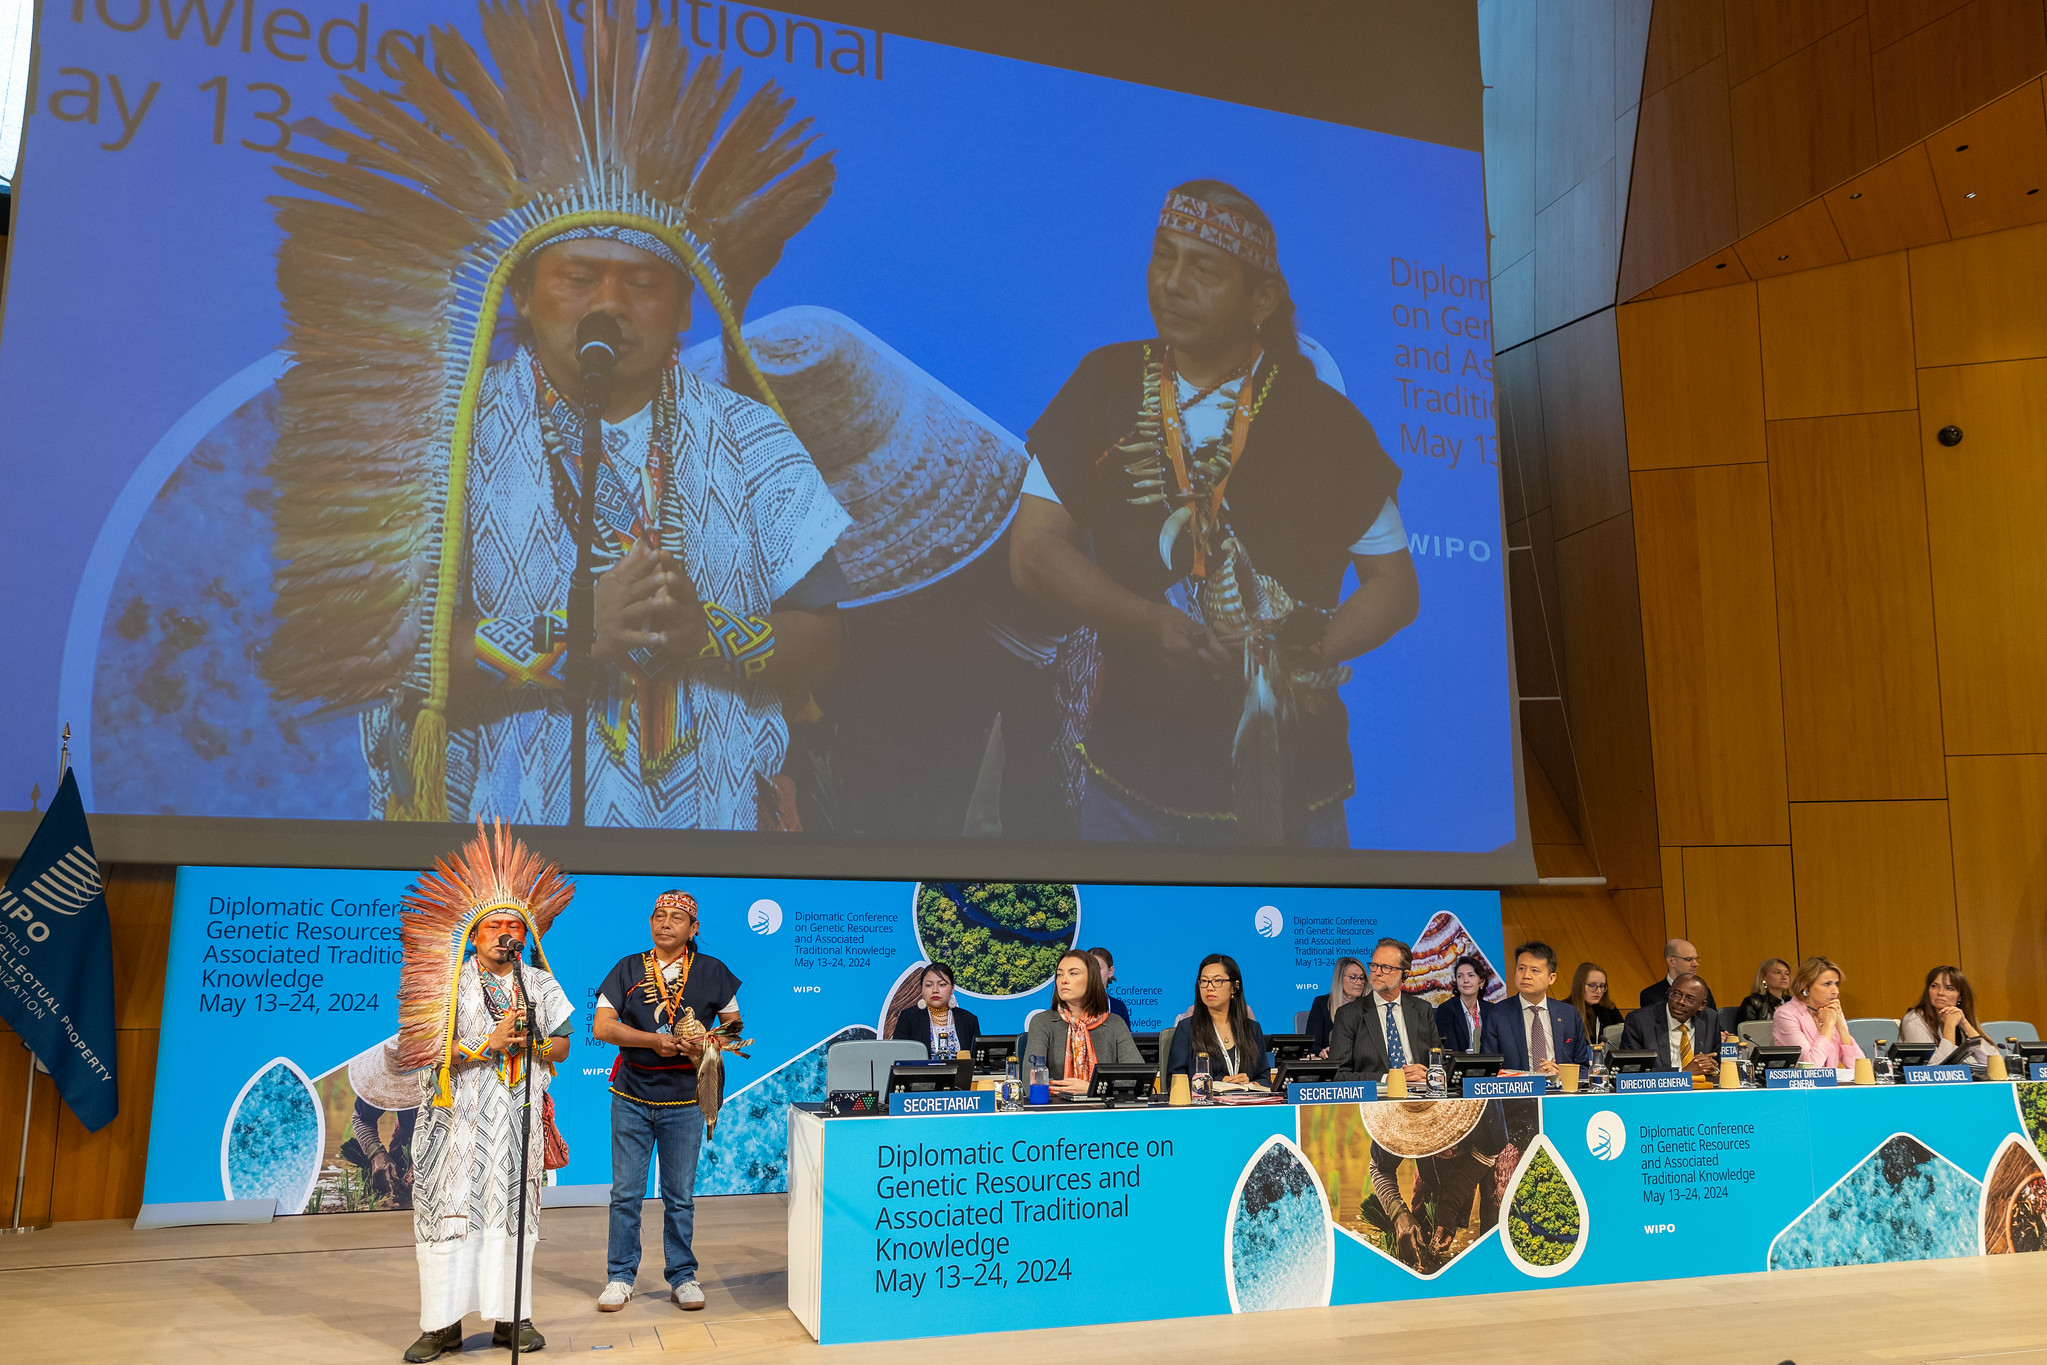 Colombia suscribió el Tratado sobre Propiedad Intelectual, Recursos Genéticos y Conocimientos Tradicionales Asociados de la OMPI